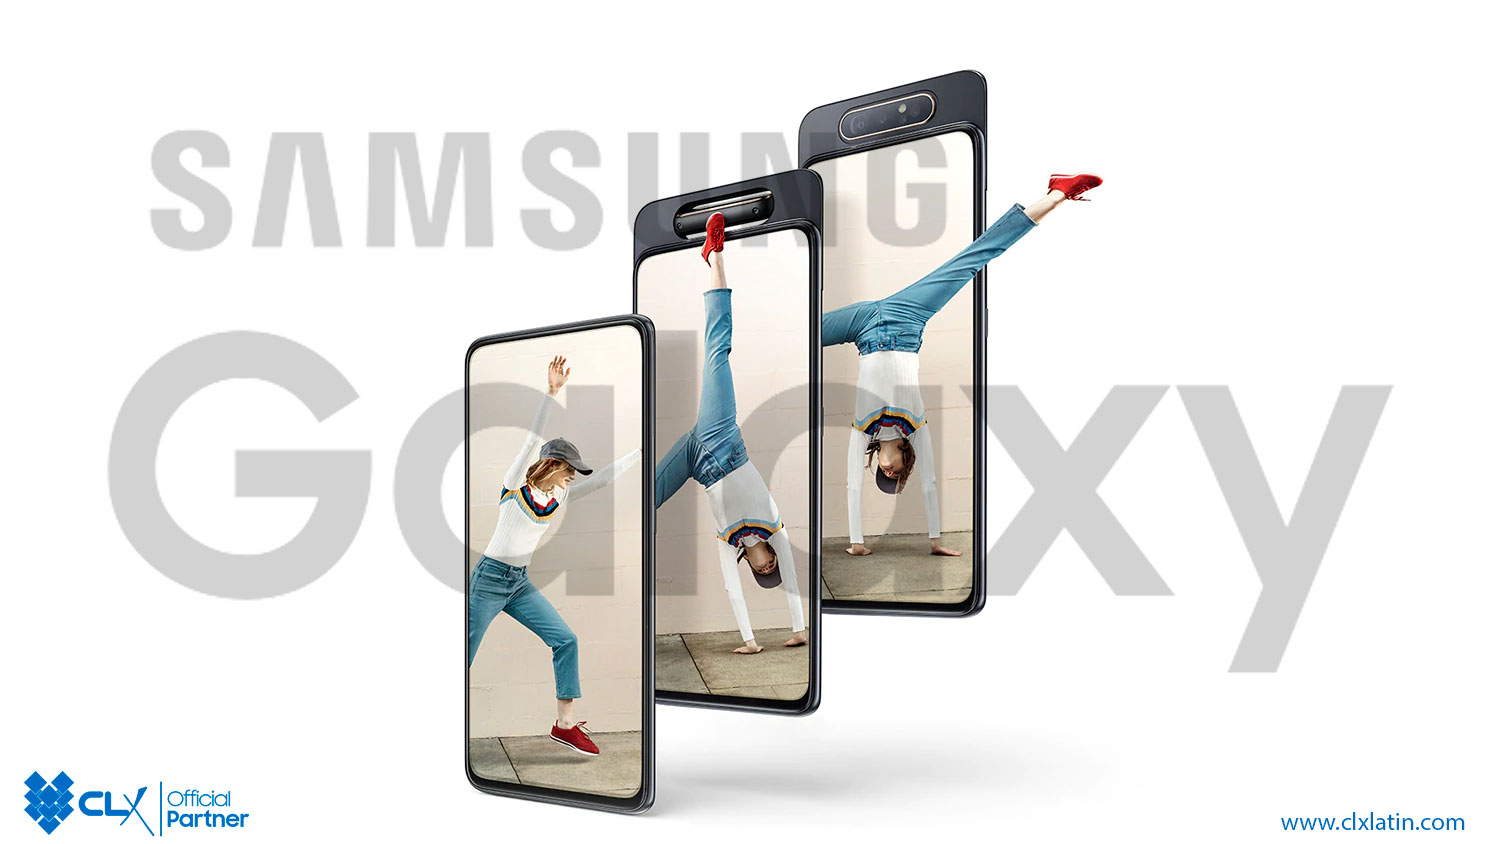 Samsung Galaxy A11 - CLX Latin